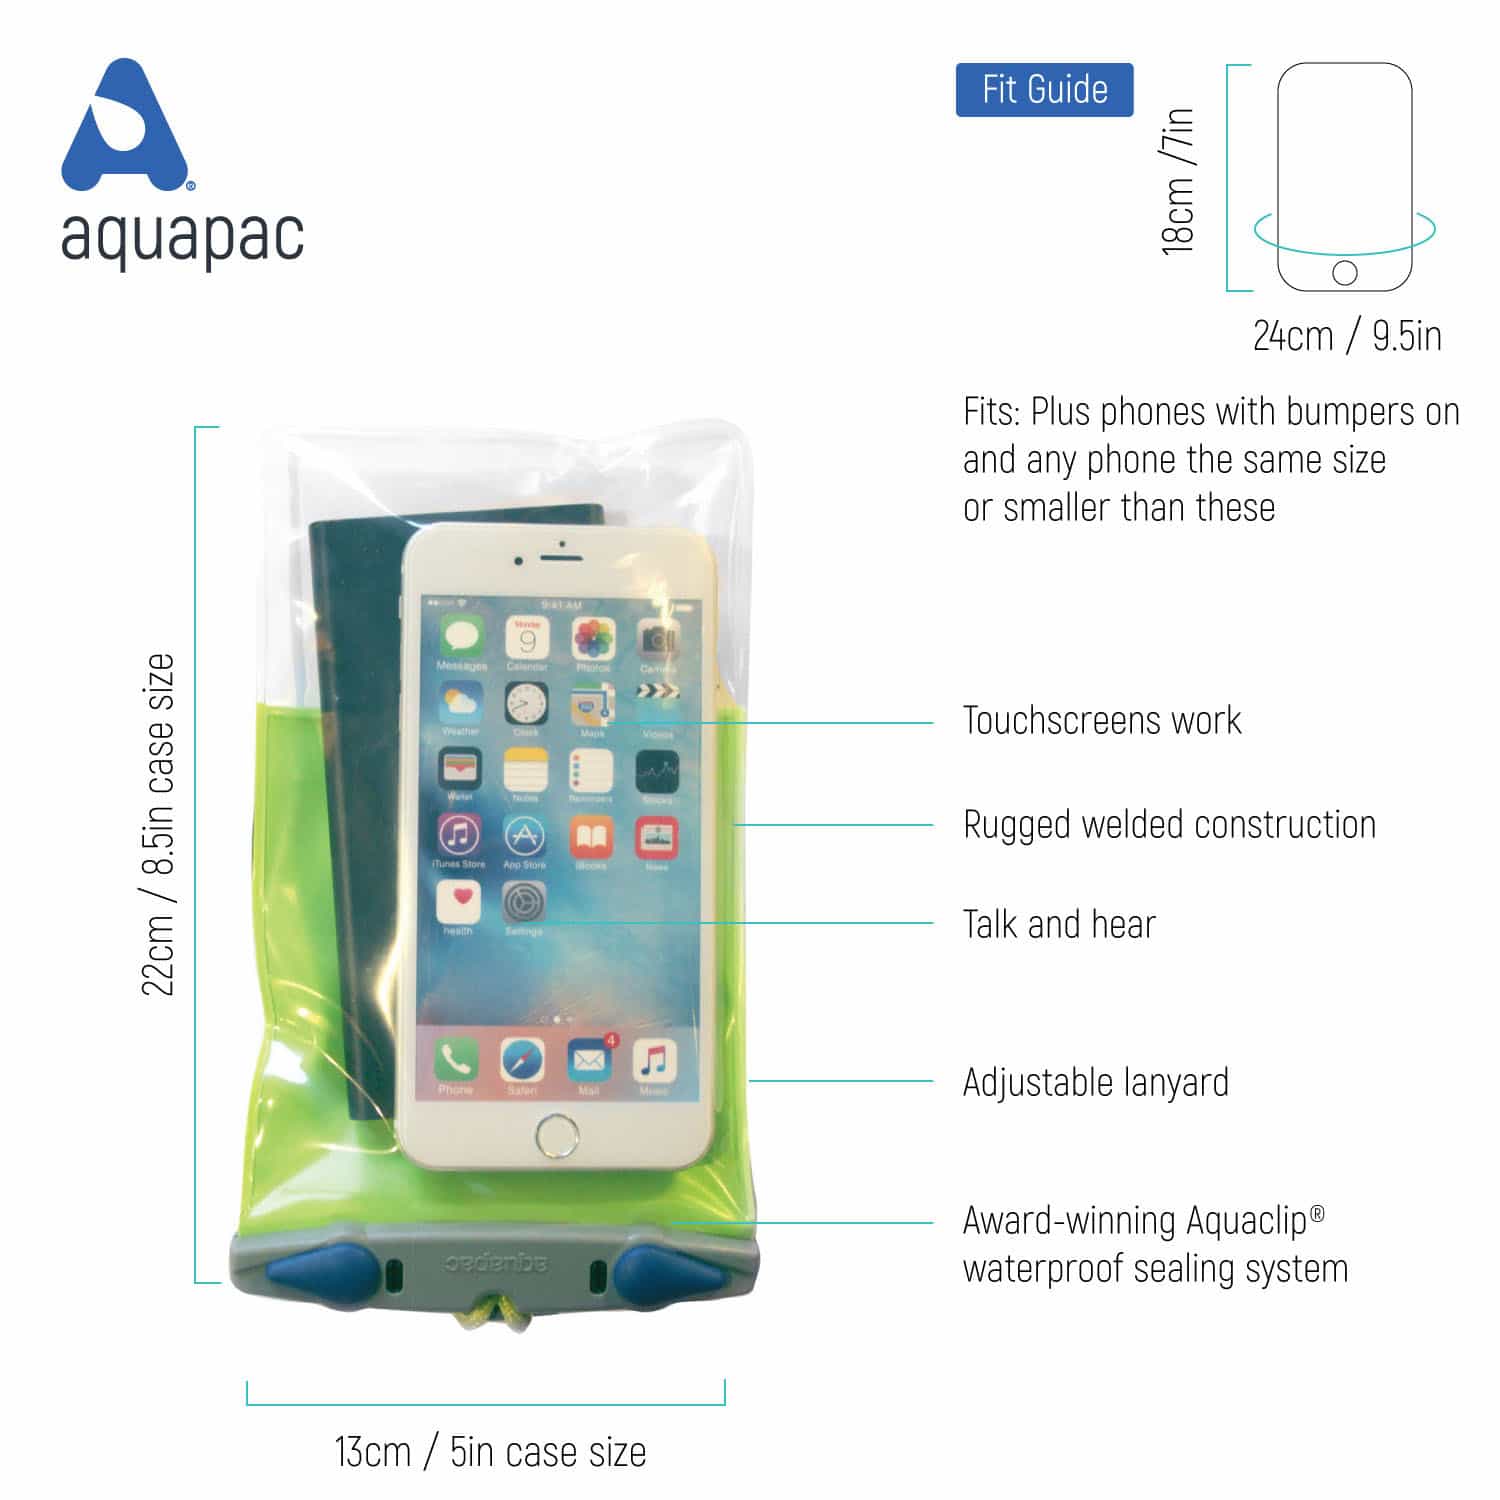 Aquapack Waterproof Phone Case for watersport use